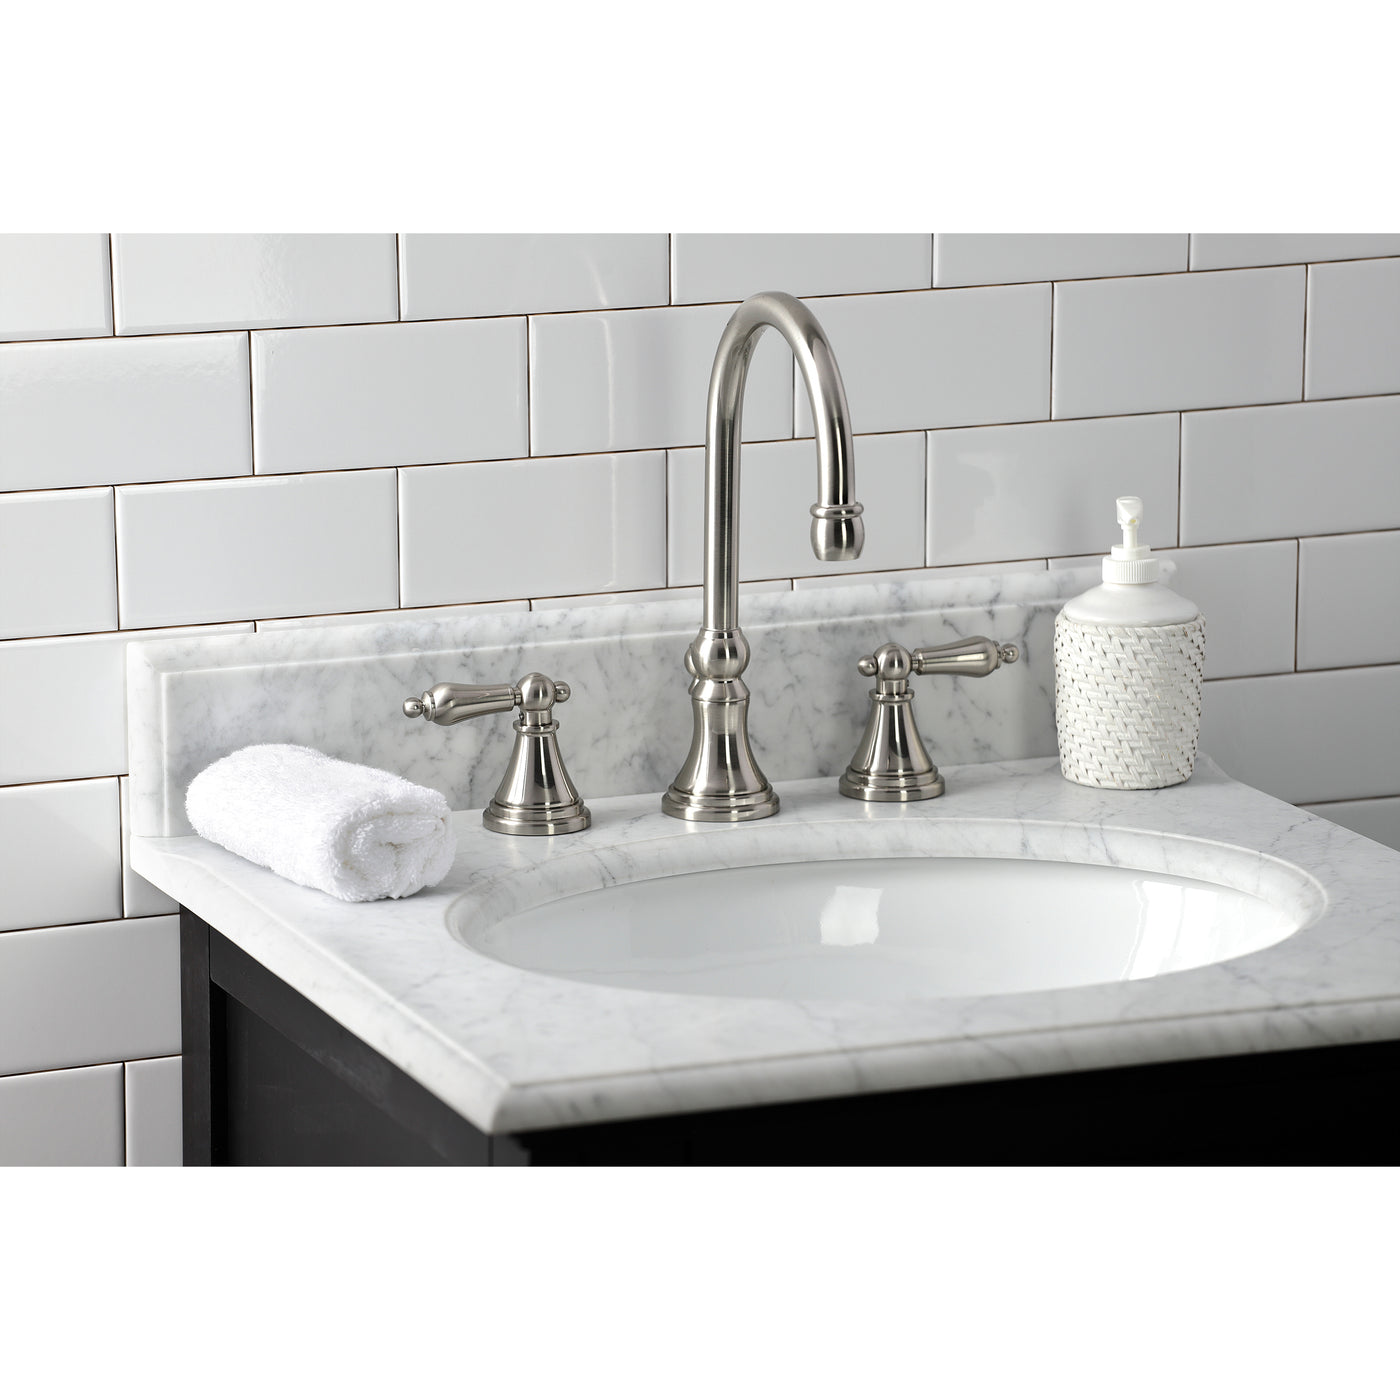 Elements of Design ES2988AL Widespread Bathroom Faucet, Brushed Nickel